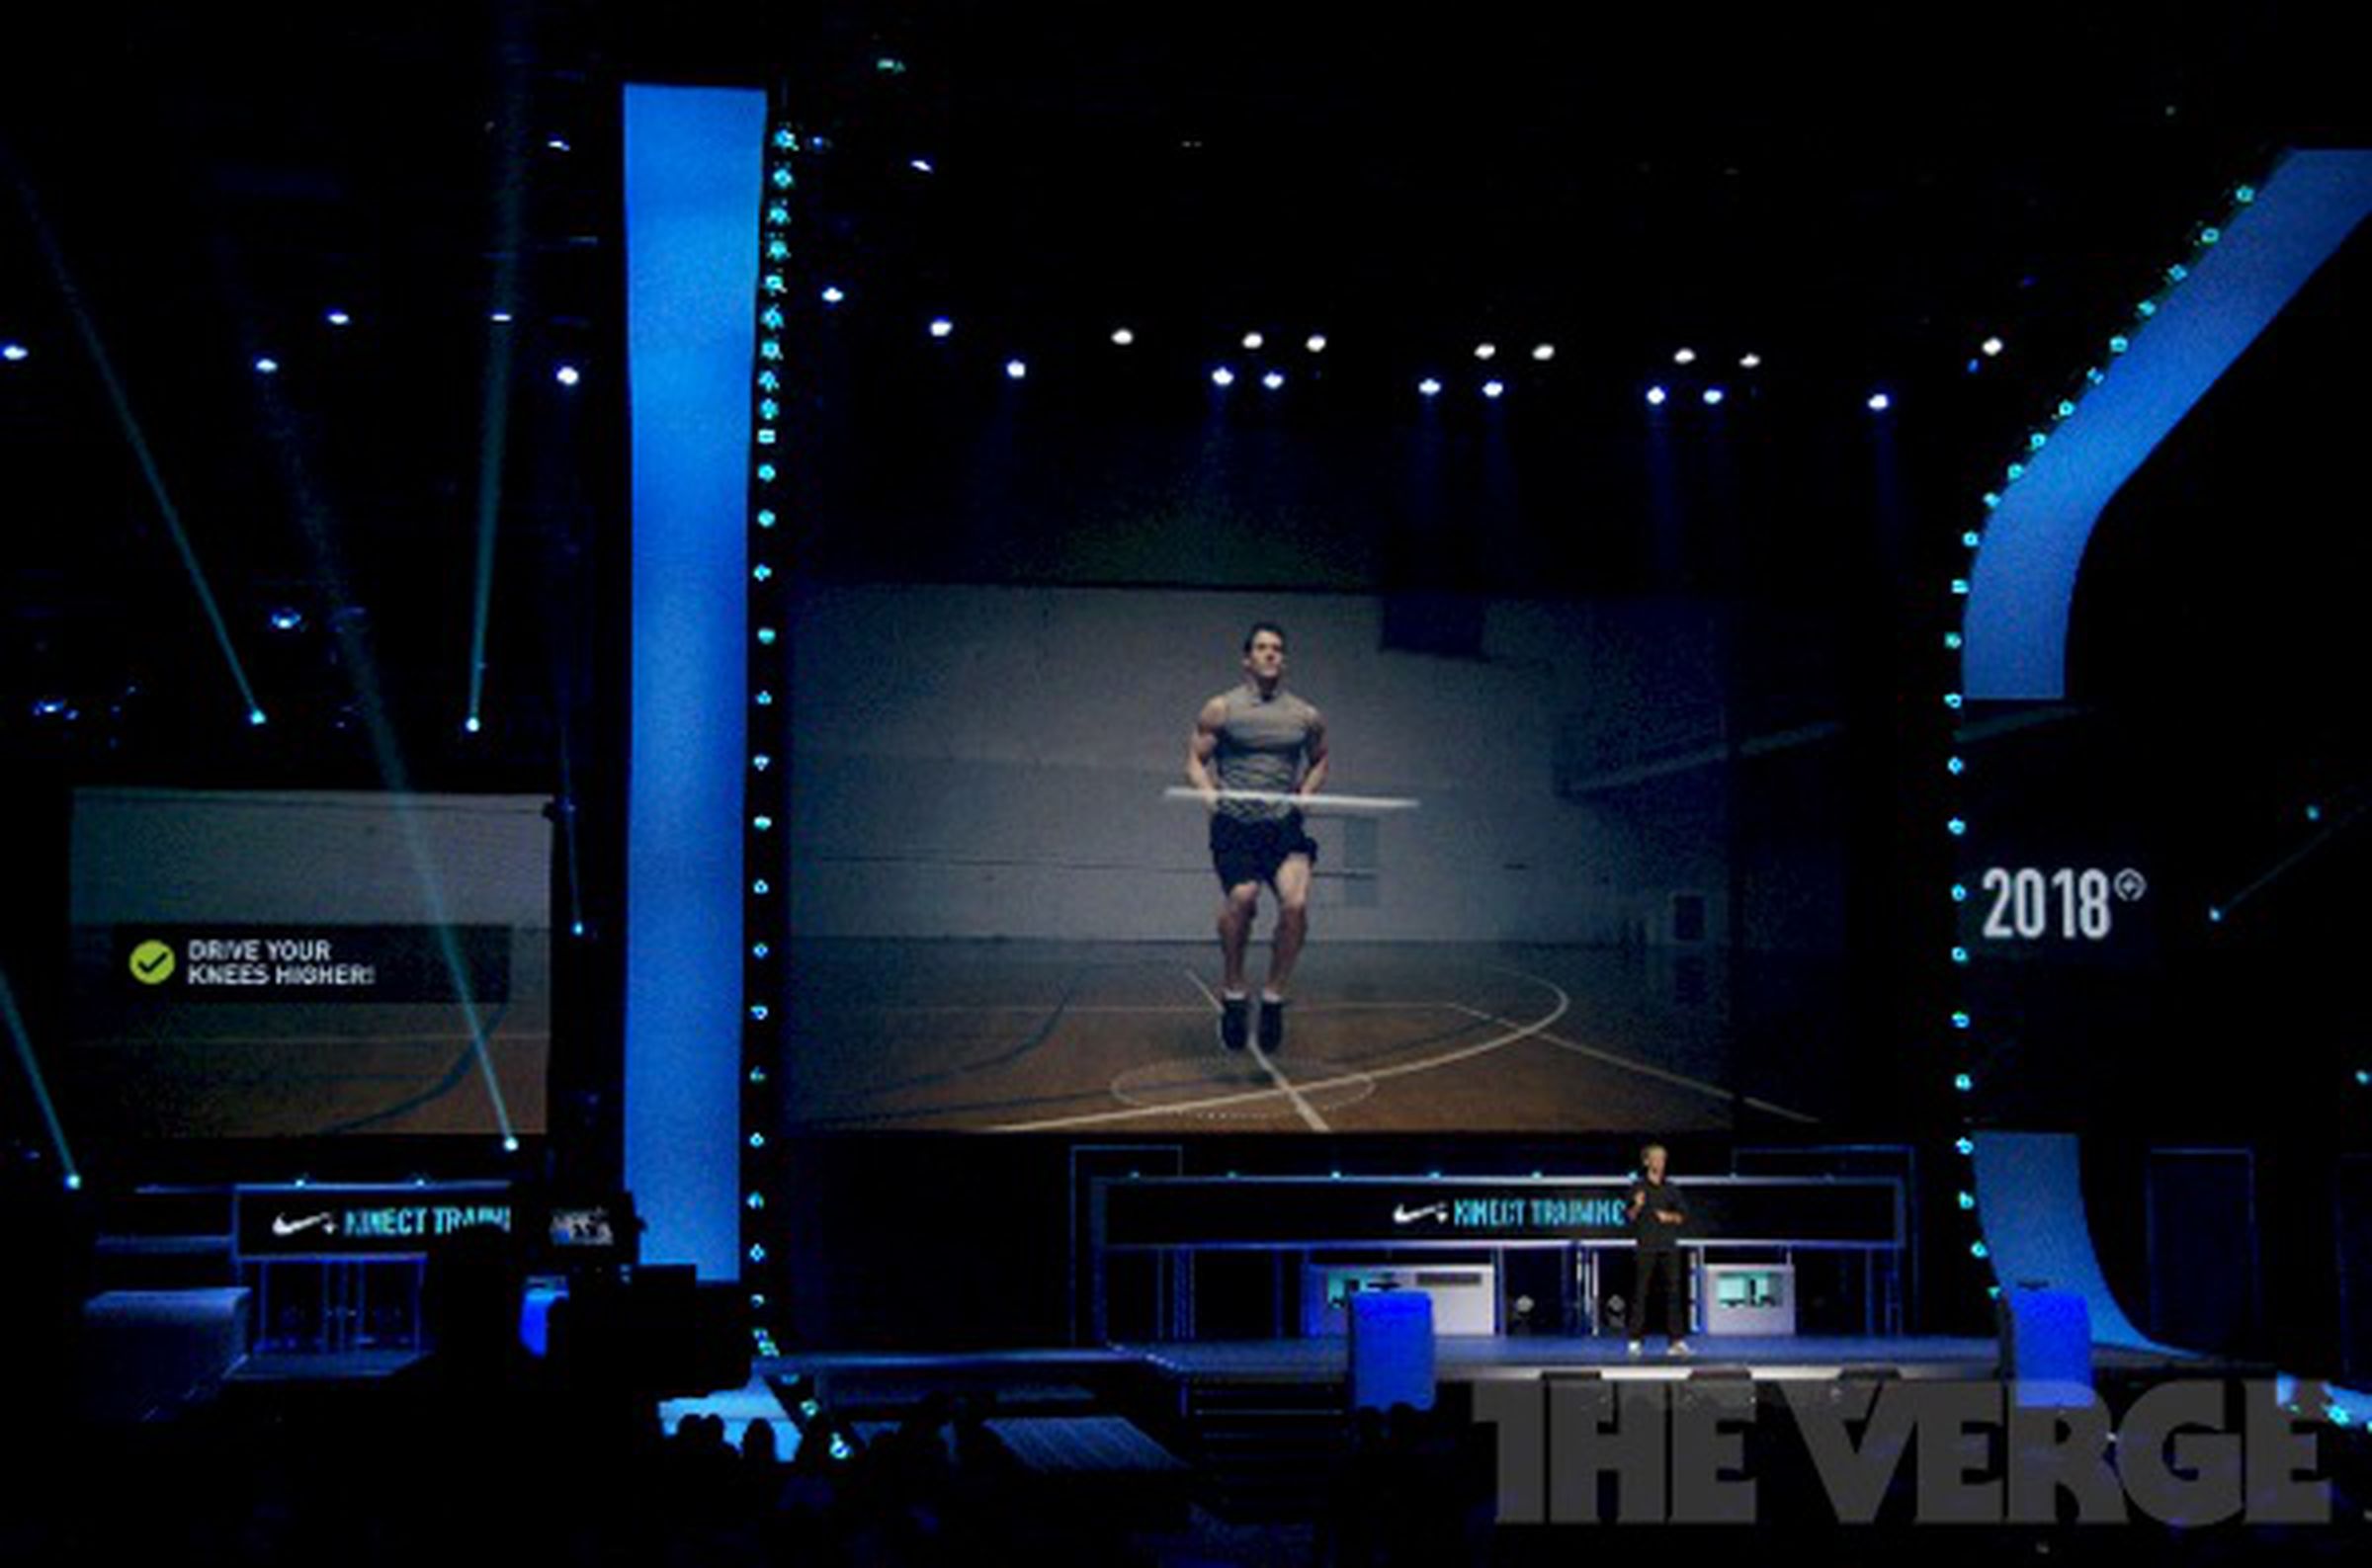 Nike+ for Xbox E3 2012 press conference photos